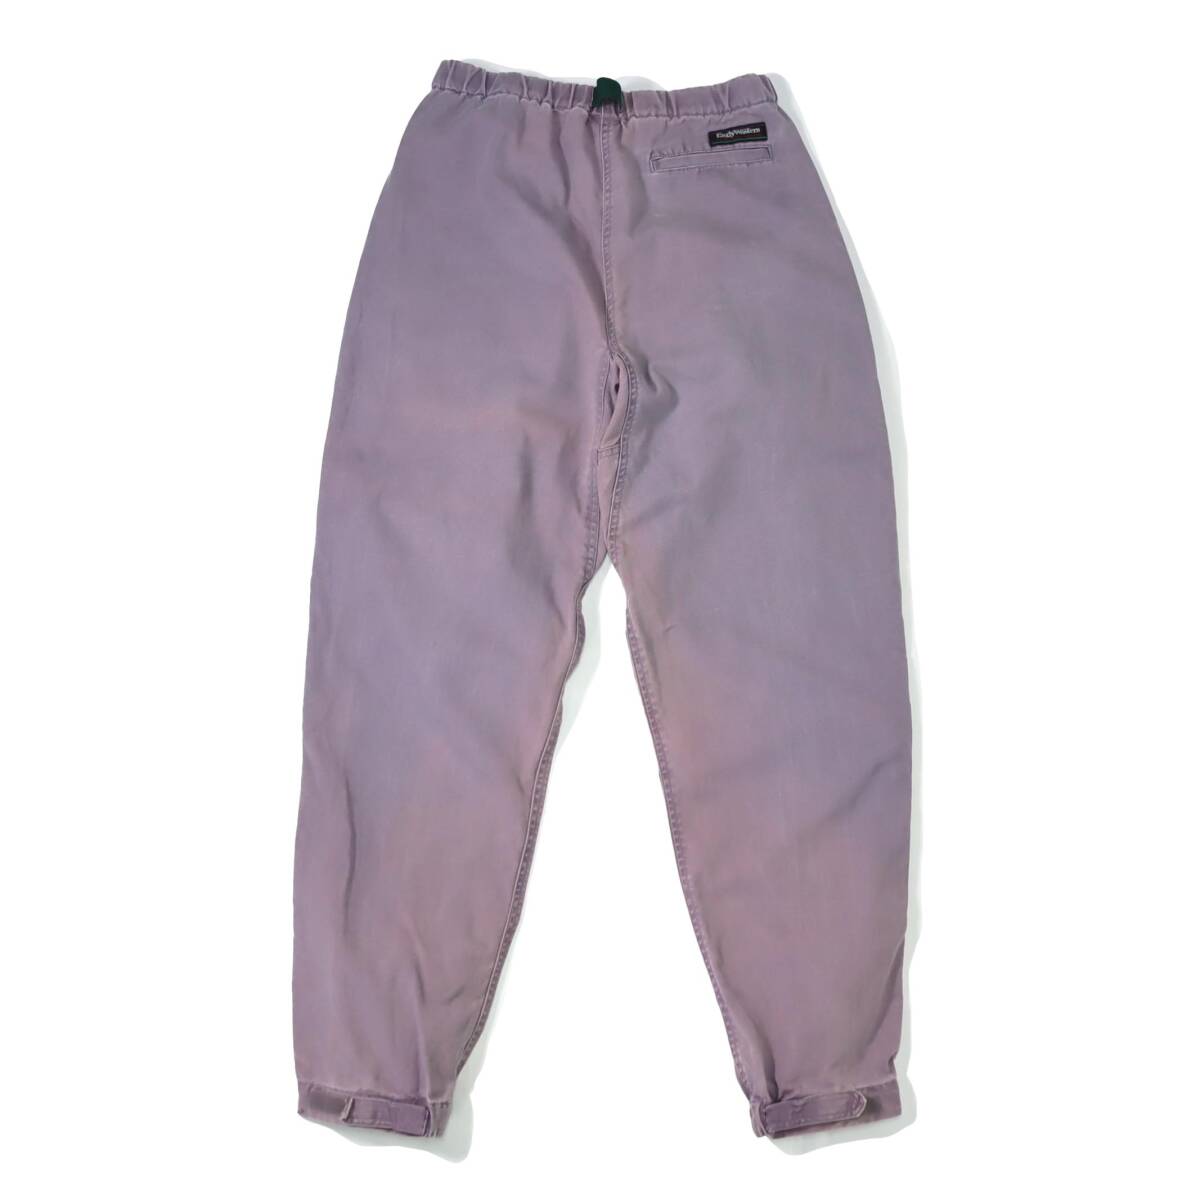 [M程度] 90s Early Winters クライミング パンツ ラベンダー アーリーウィンターズ コットン キャンバス 紫 ピンク ビンテージ vintage 80sの画像3